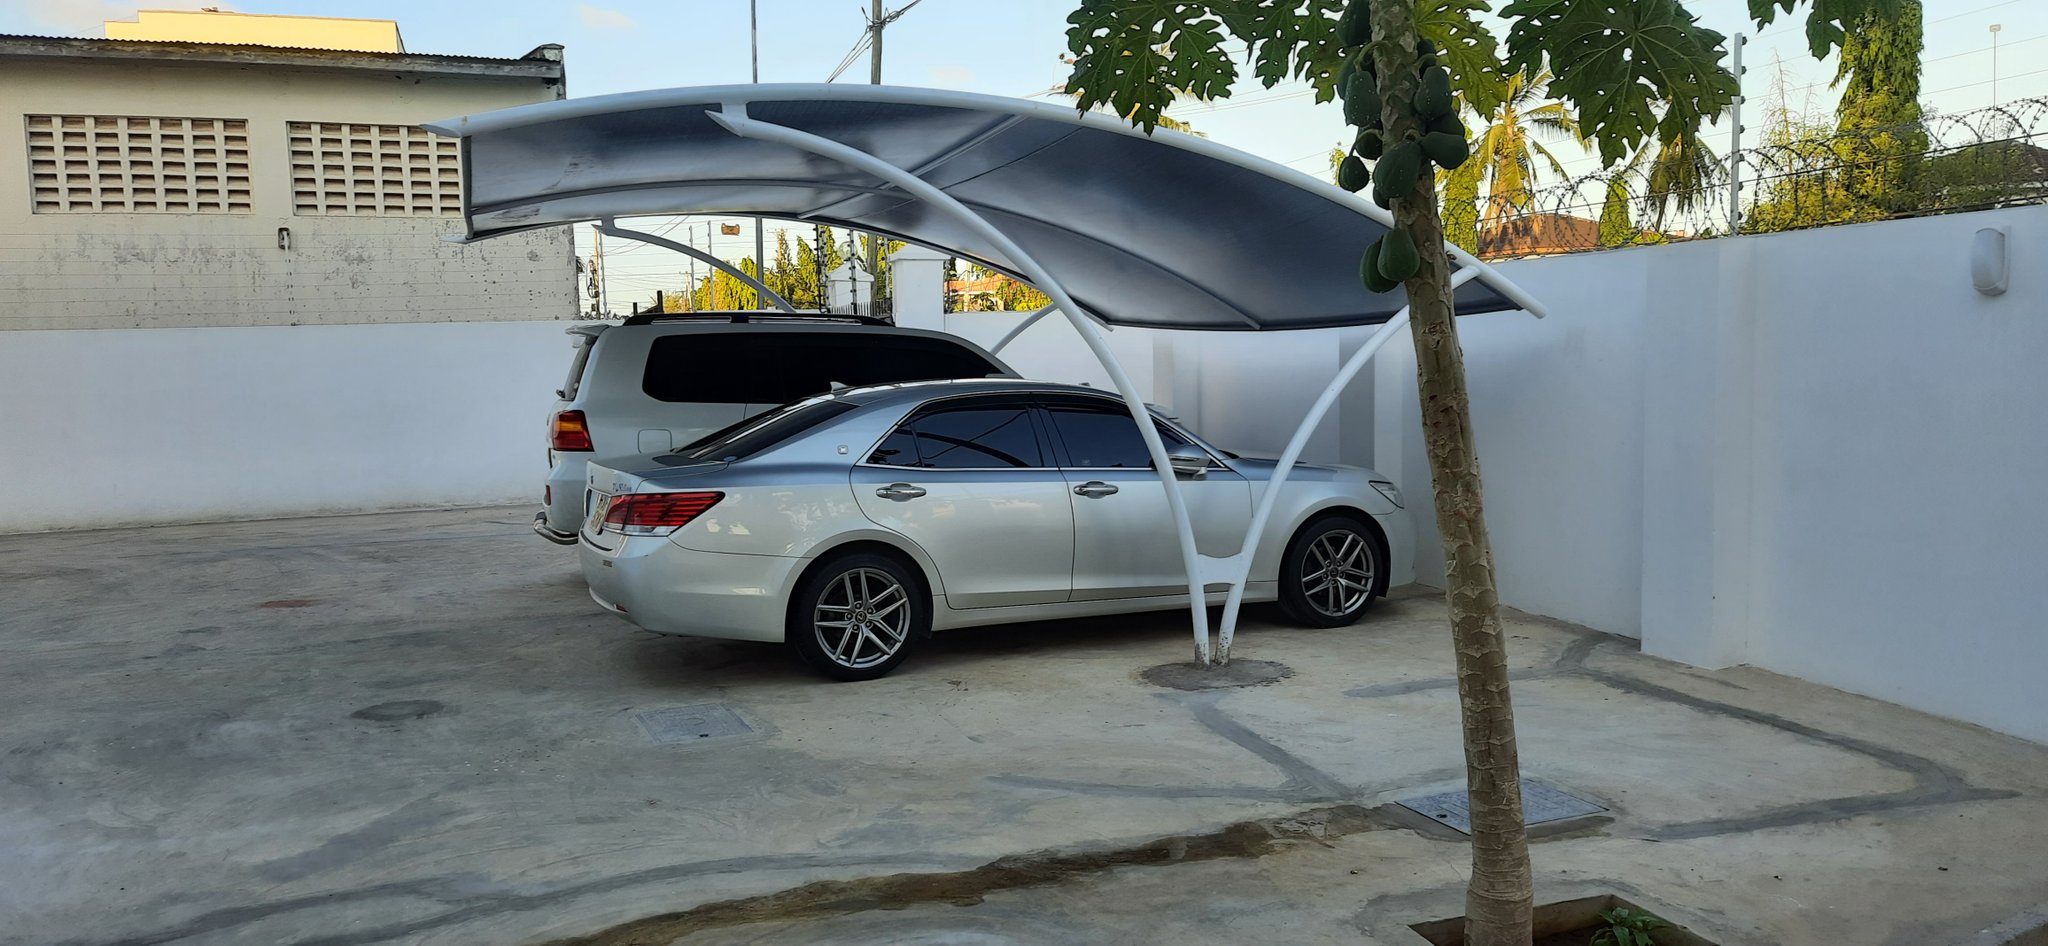 Car Shade-Carport-Parking Shade-Waterproof Shade-Shade net Canopy-Sun Shade-Car Wash Shade